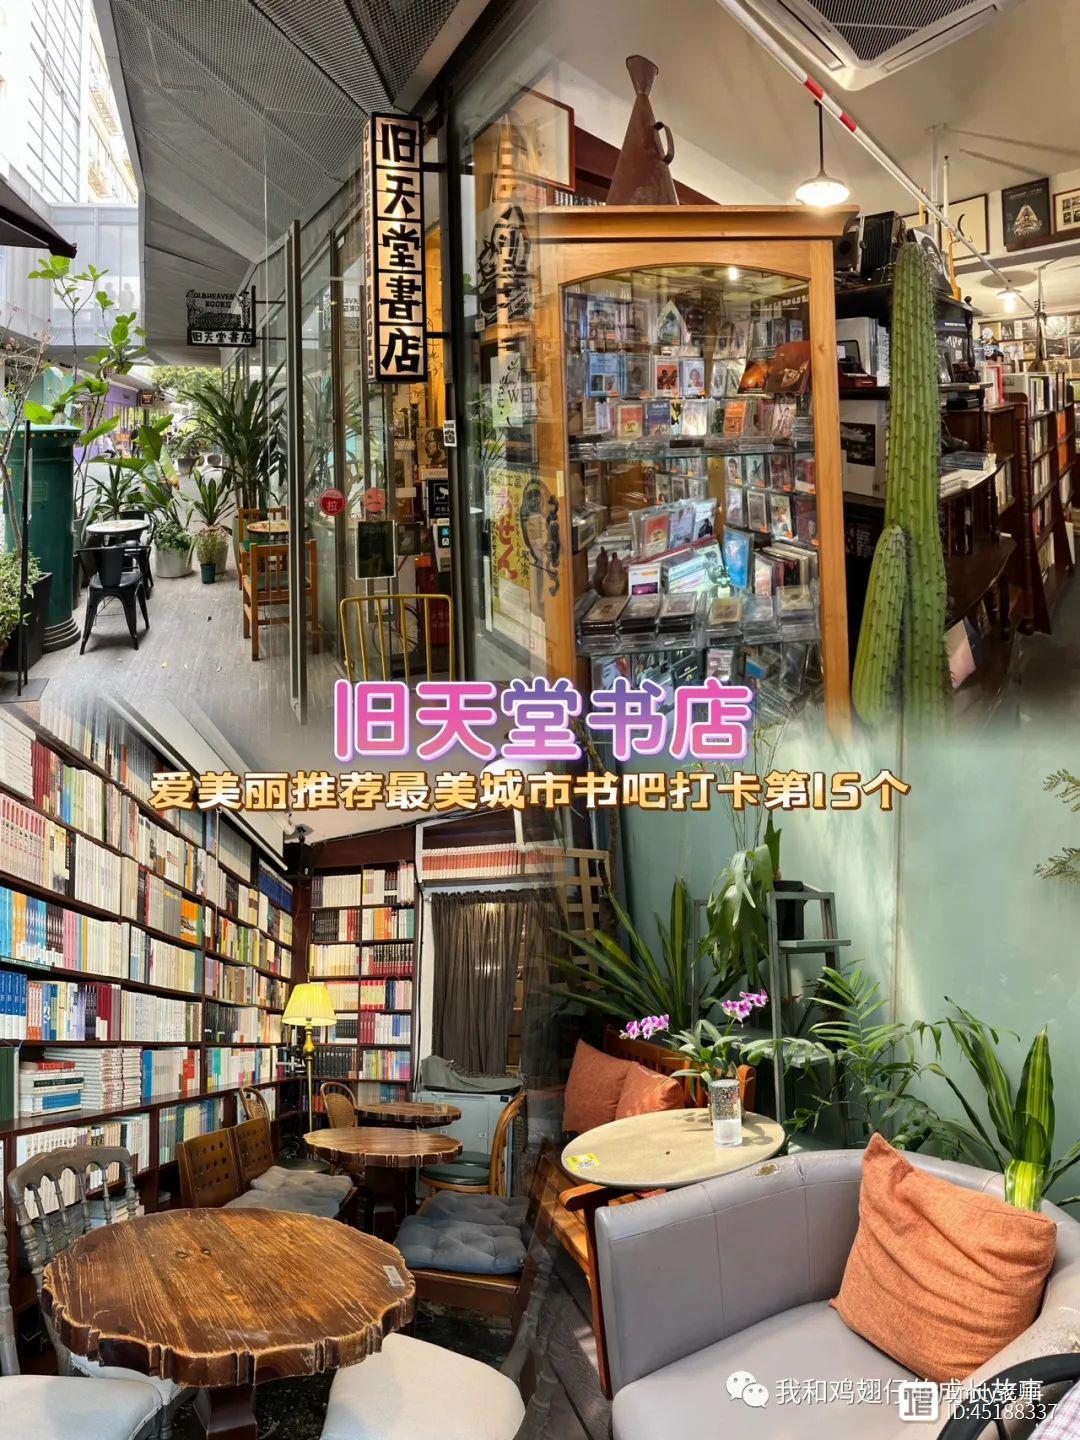 爱美丽推荐最美城市书吧打卡第15个 - 深圳最美复古书店咖啡馆-旧天堂书店